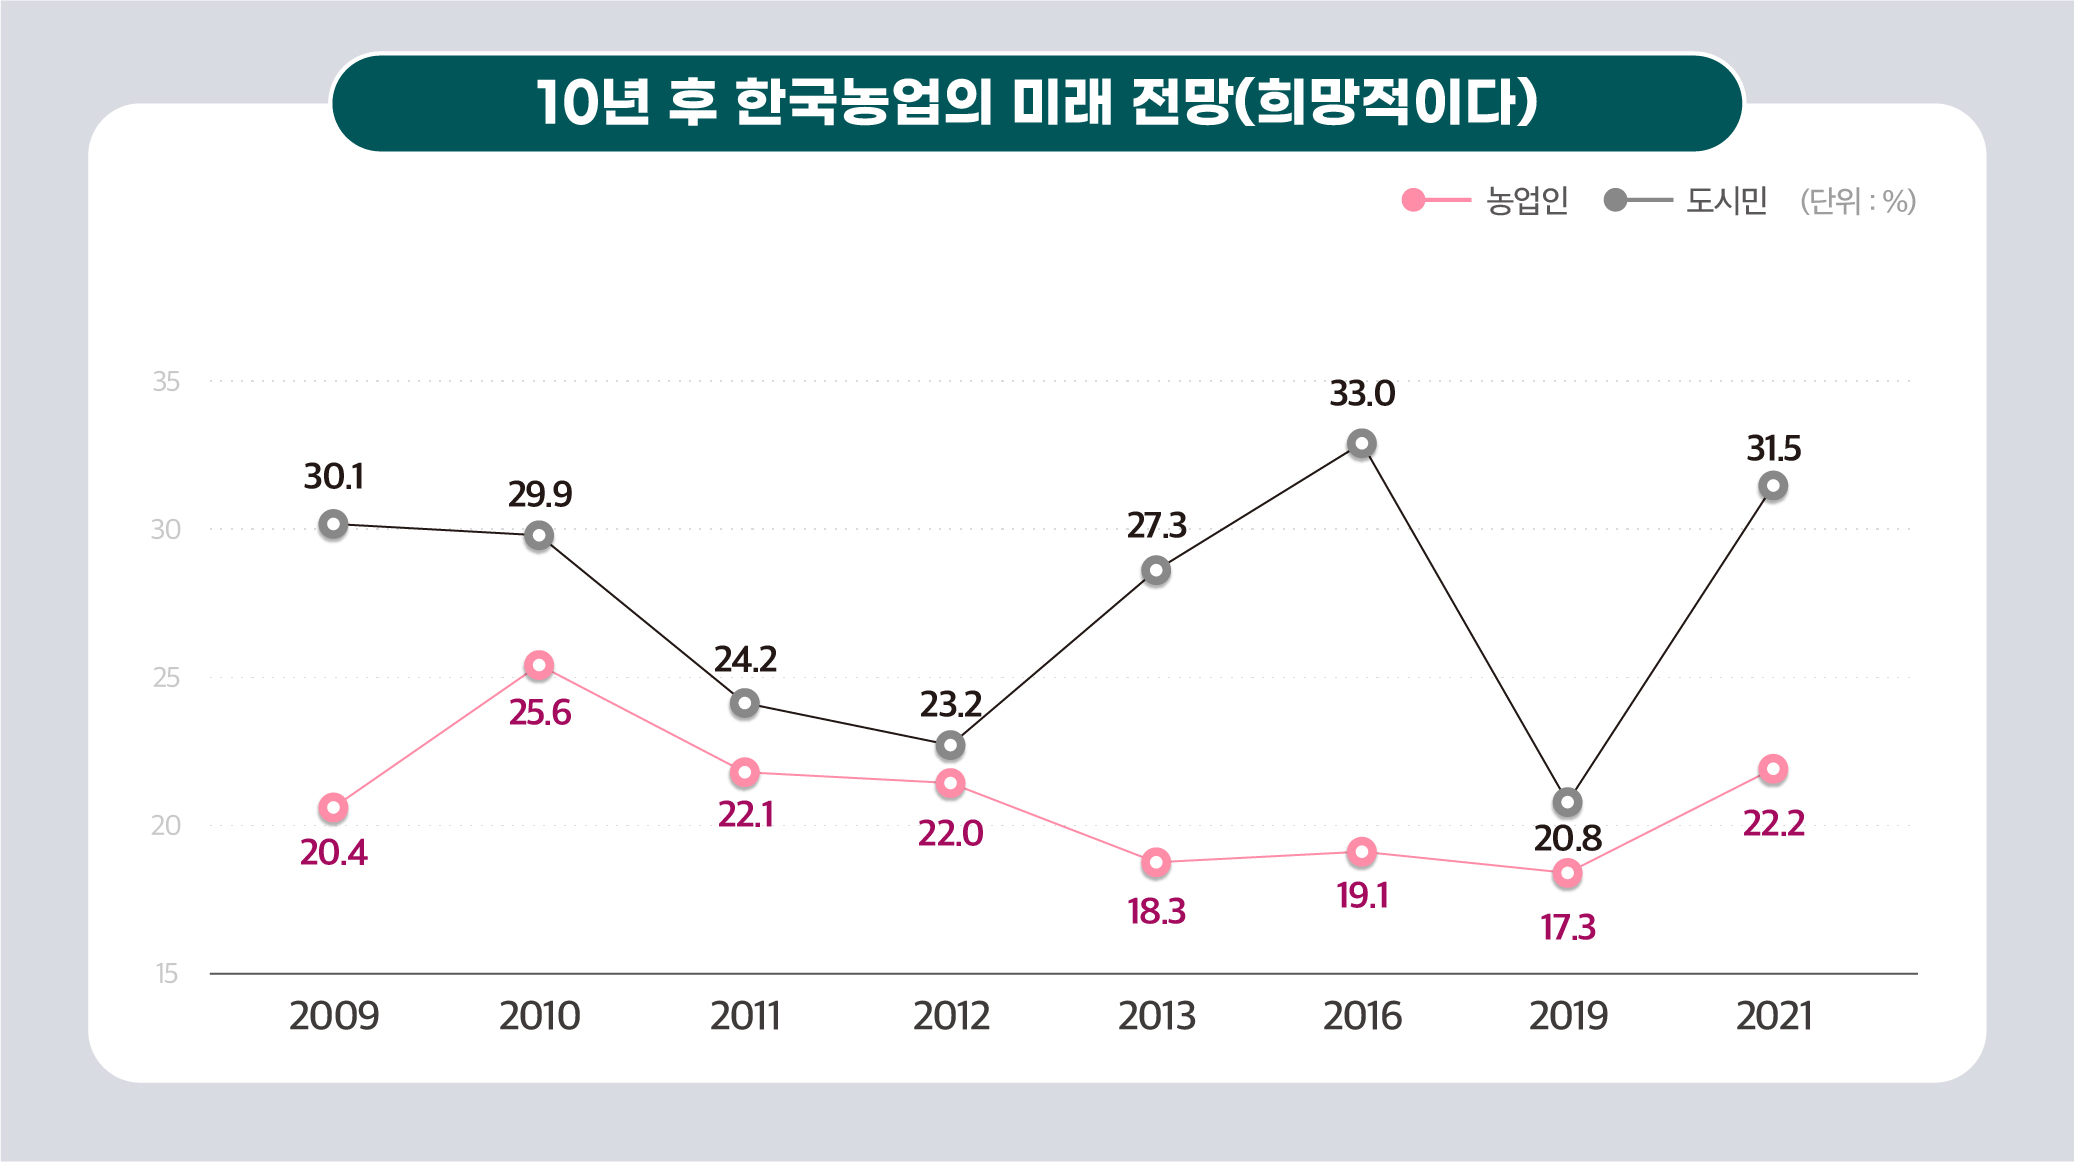 10년 후 한국농업의 미래 전망(희망적이다) 이미지